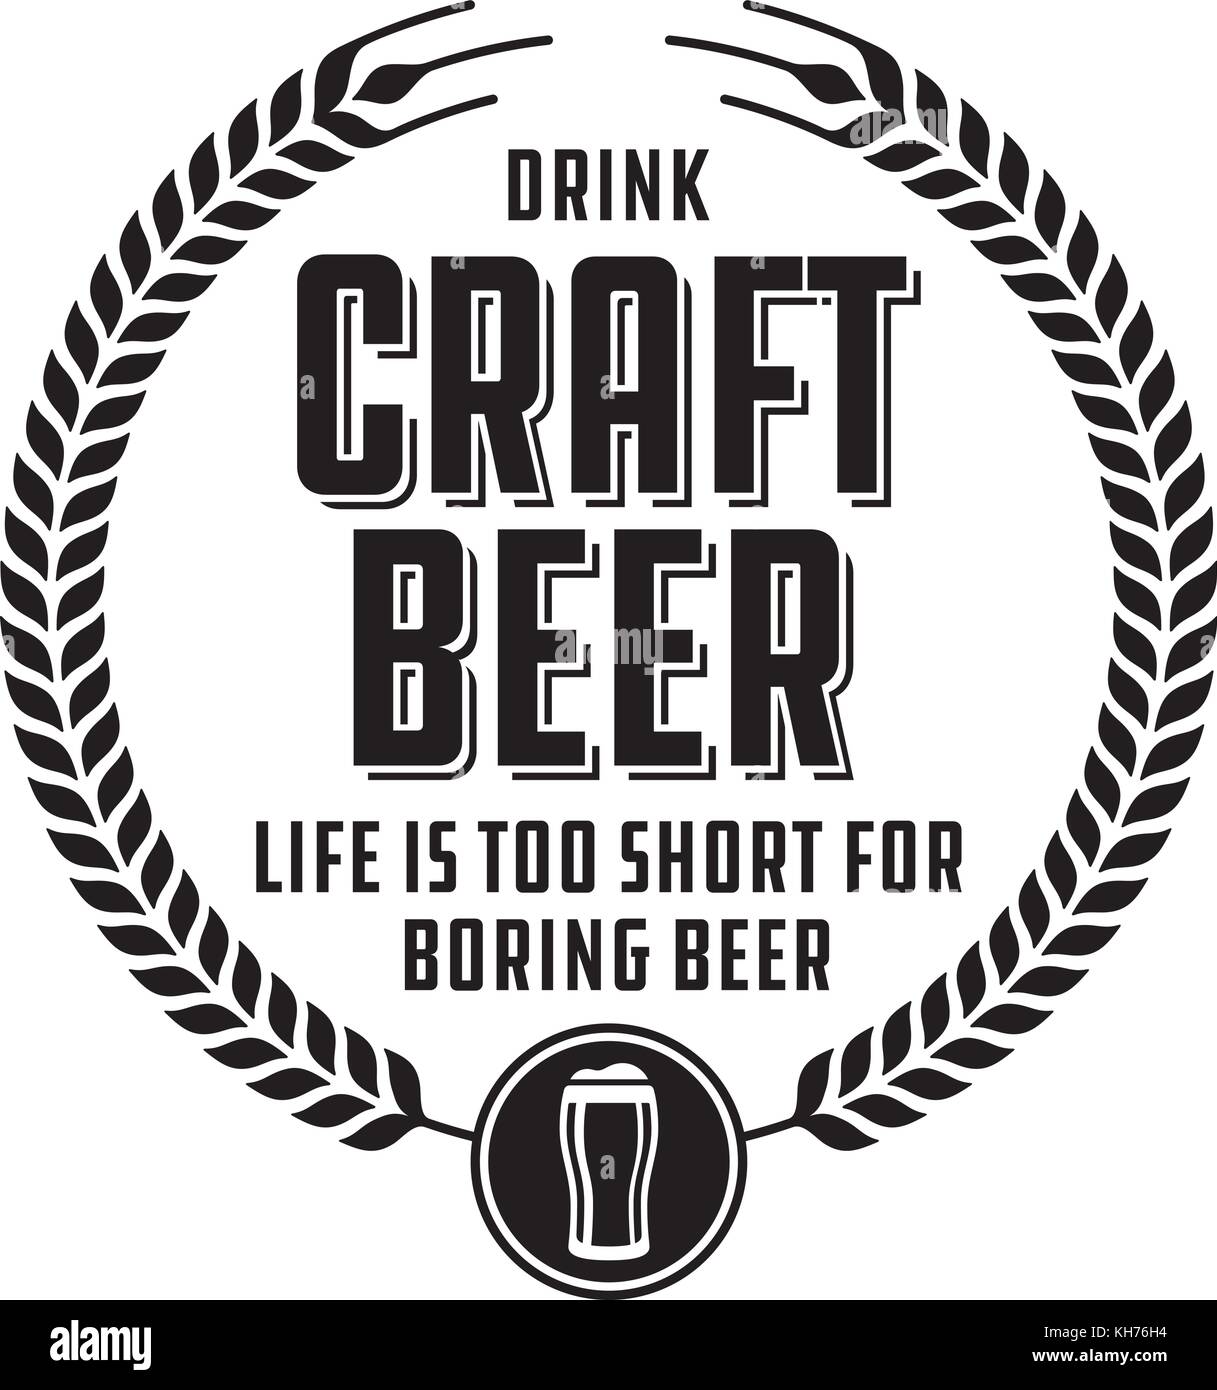 Handwerk Bier Abzeichen oder Label. Handwerk Bier vektor design verfügt über Weizen oder Gerste Kranz und der Slogan, das Leben ist zu kurz für langweilige Bier. Stock Vektor